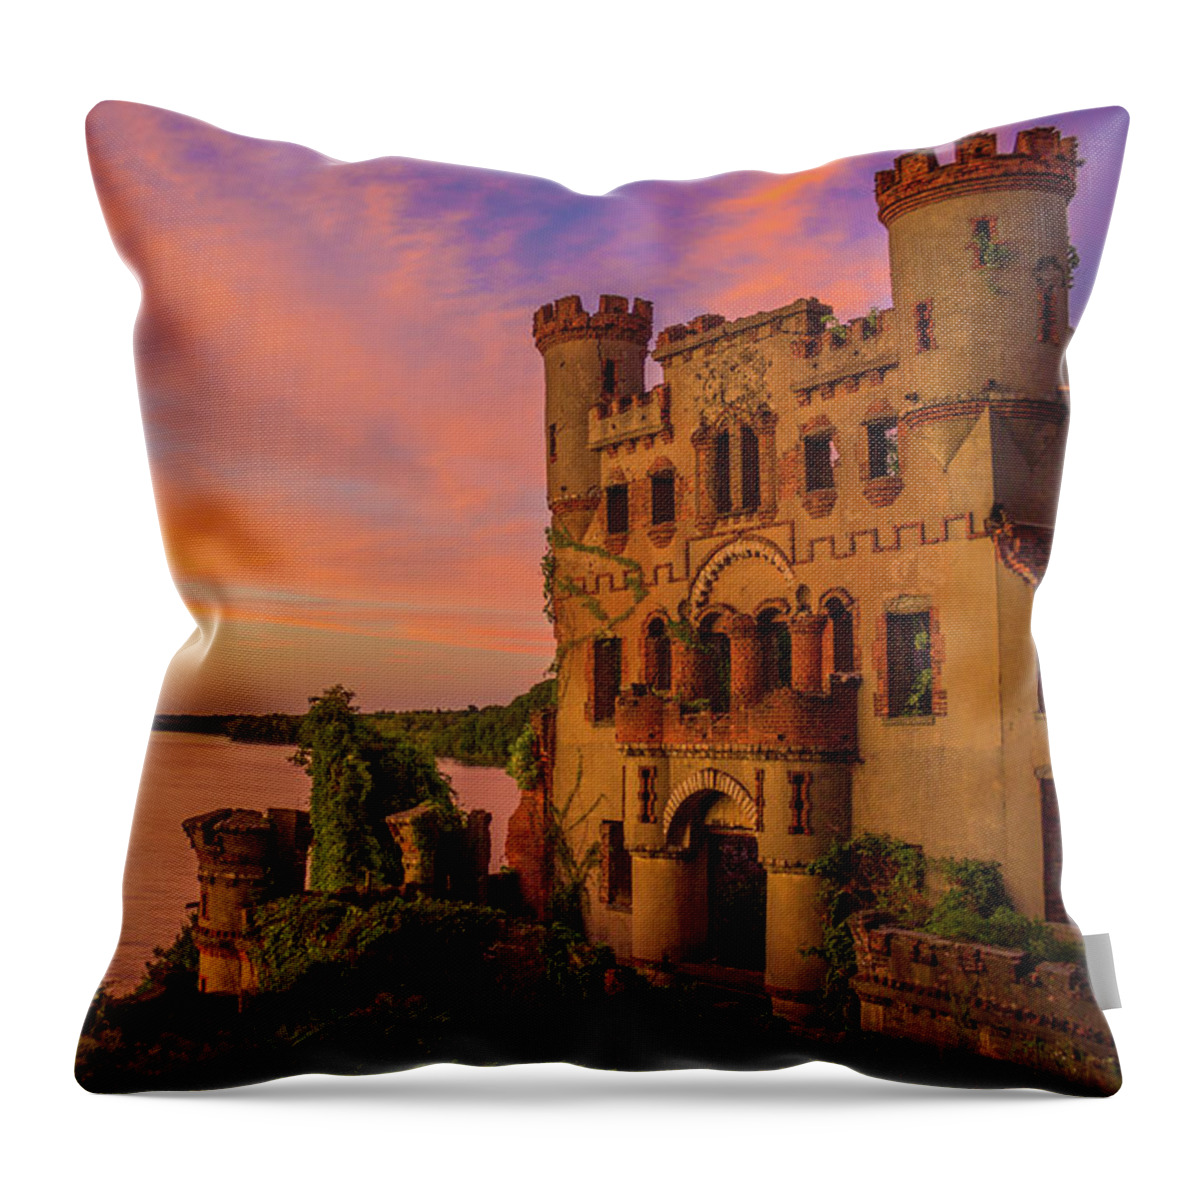 Hudson Valley Throw Pillow featuring the photograph Bannerman Castle Sunset by John Morzen